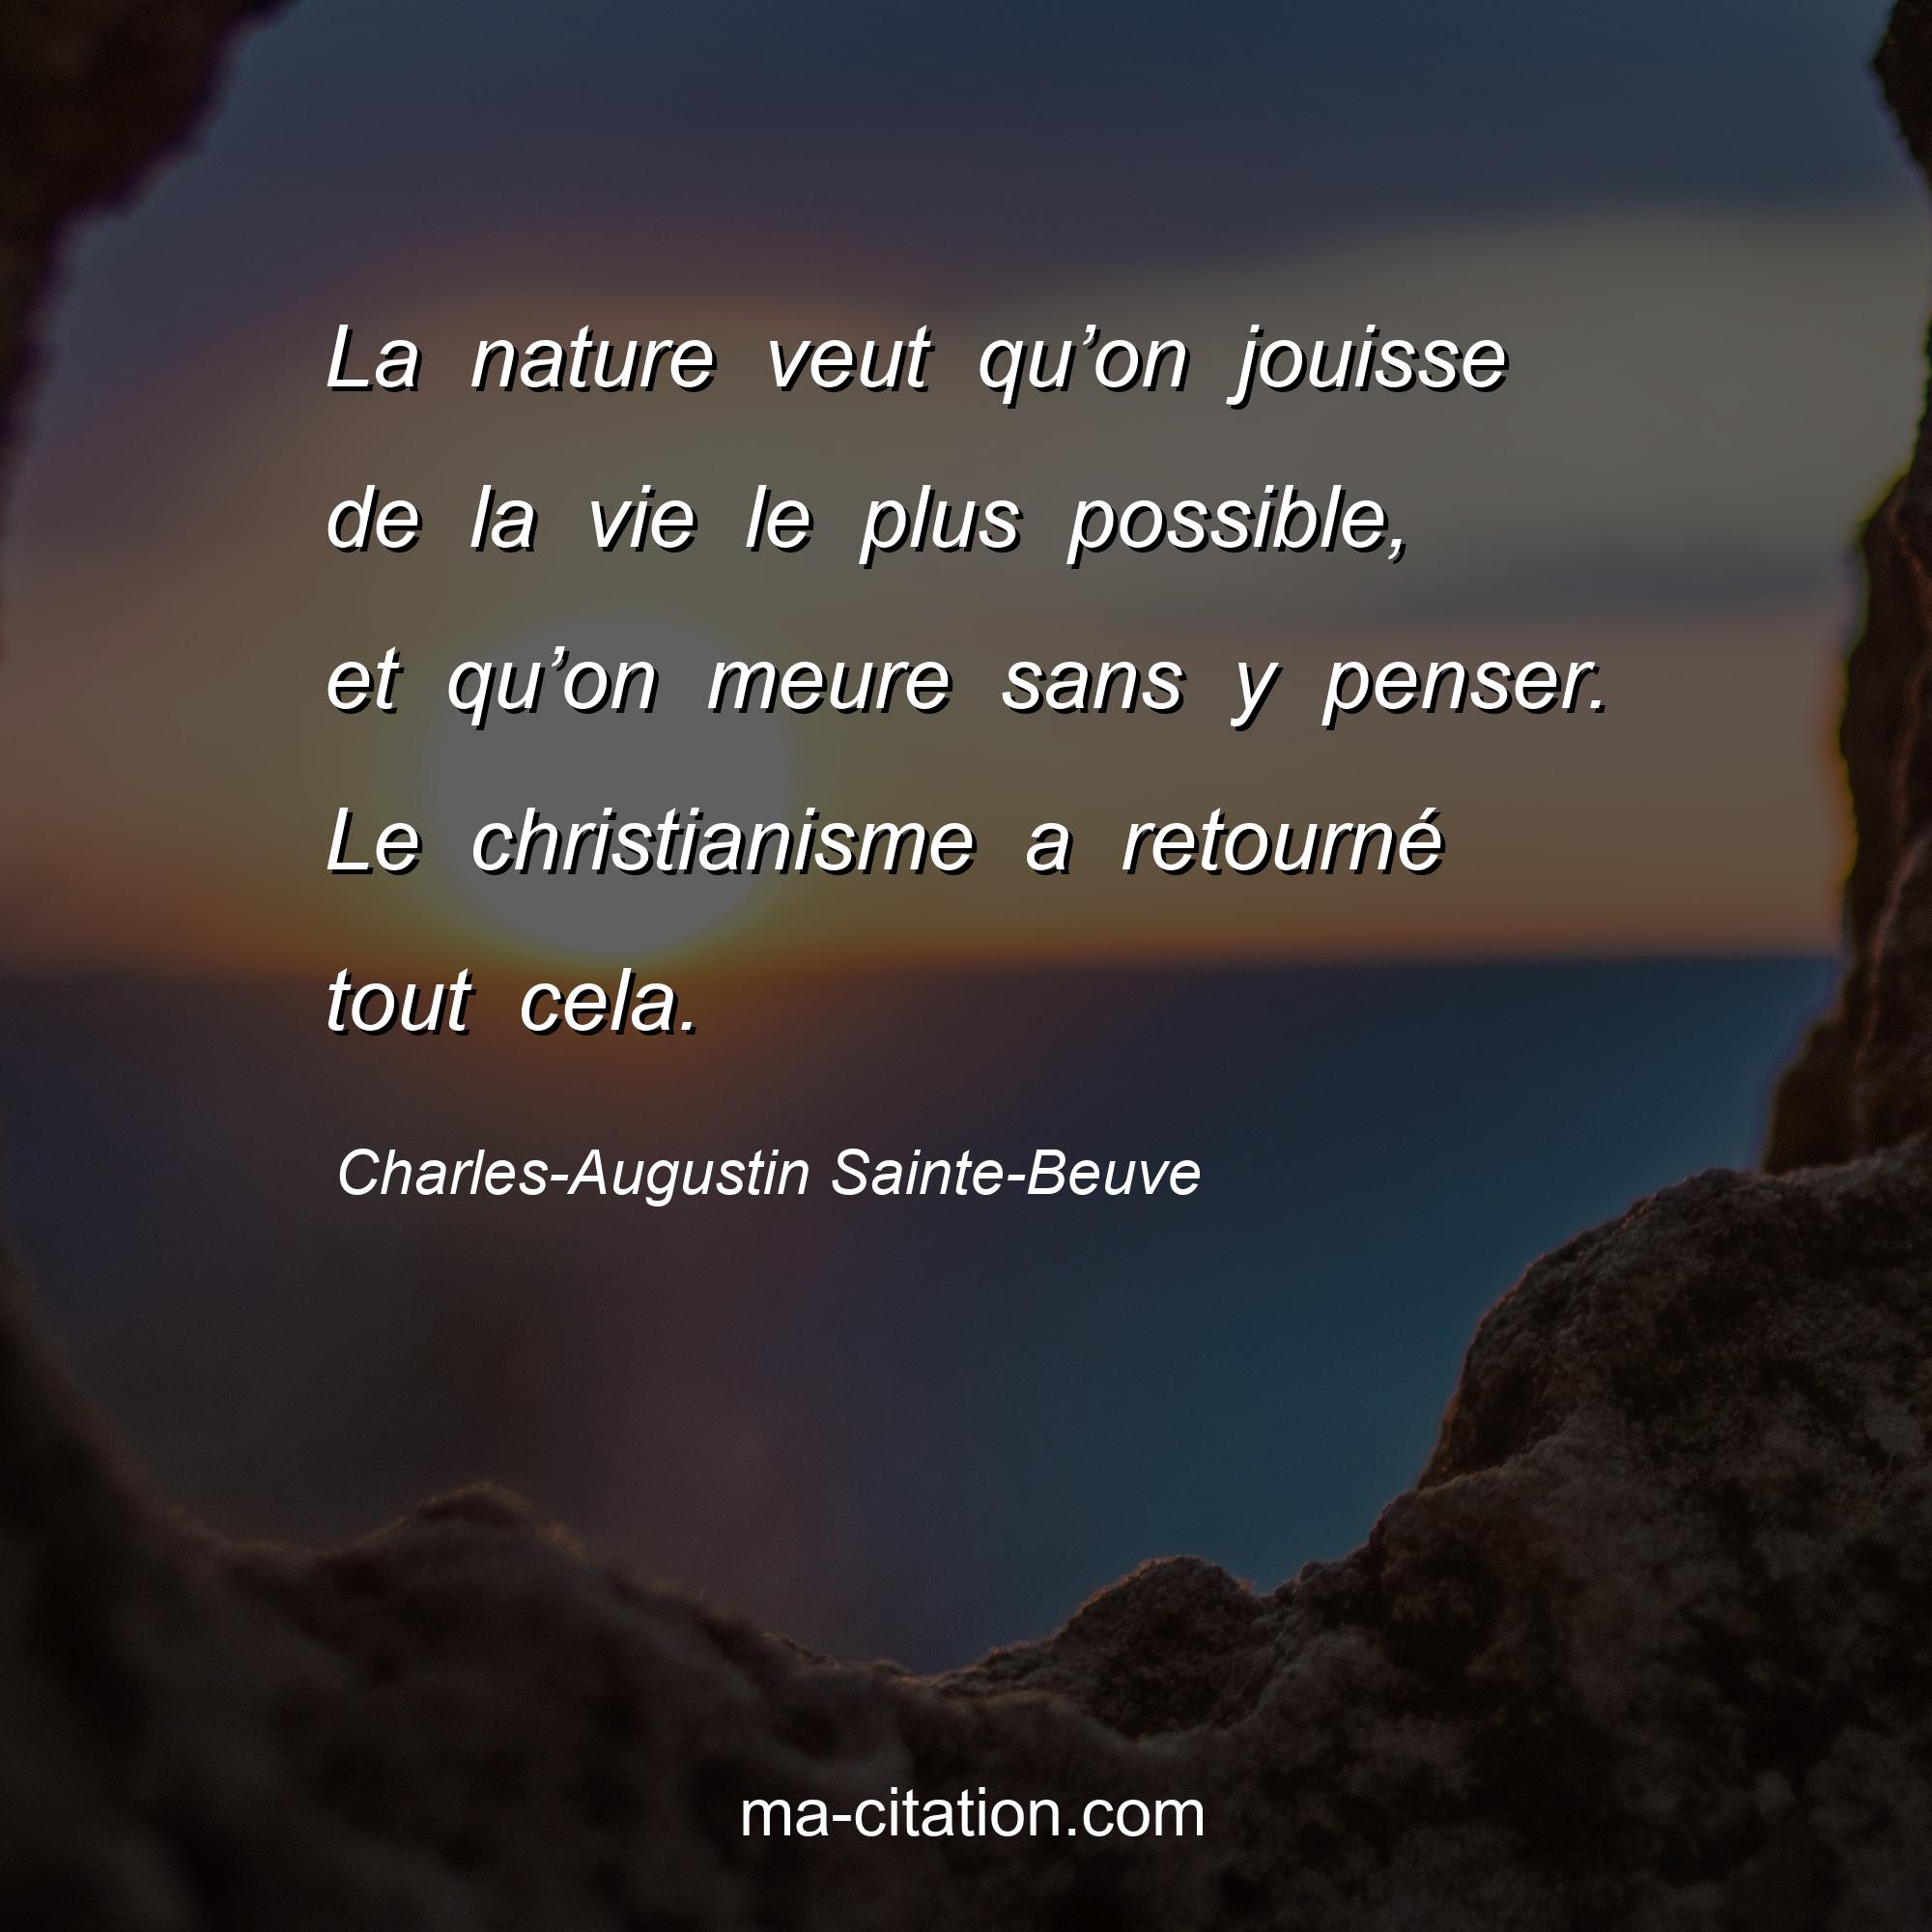 Charles-Augustin Sainte-Beuve : La nature veut qu’on jouisse de la vie le plus possible, et qu’on meure sans y penser. Le christianisme a retourné tout cela.